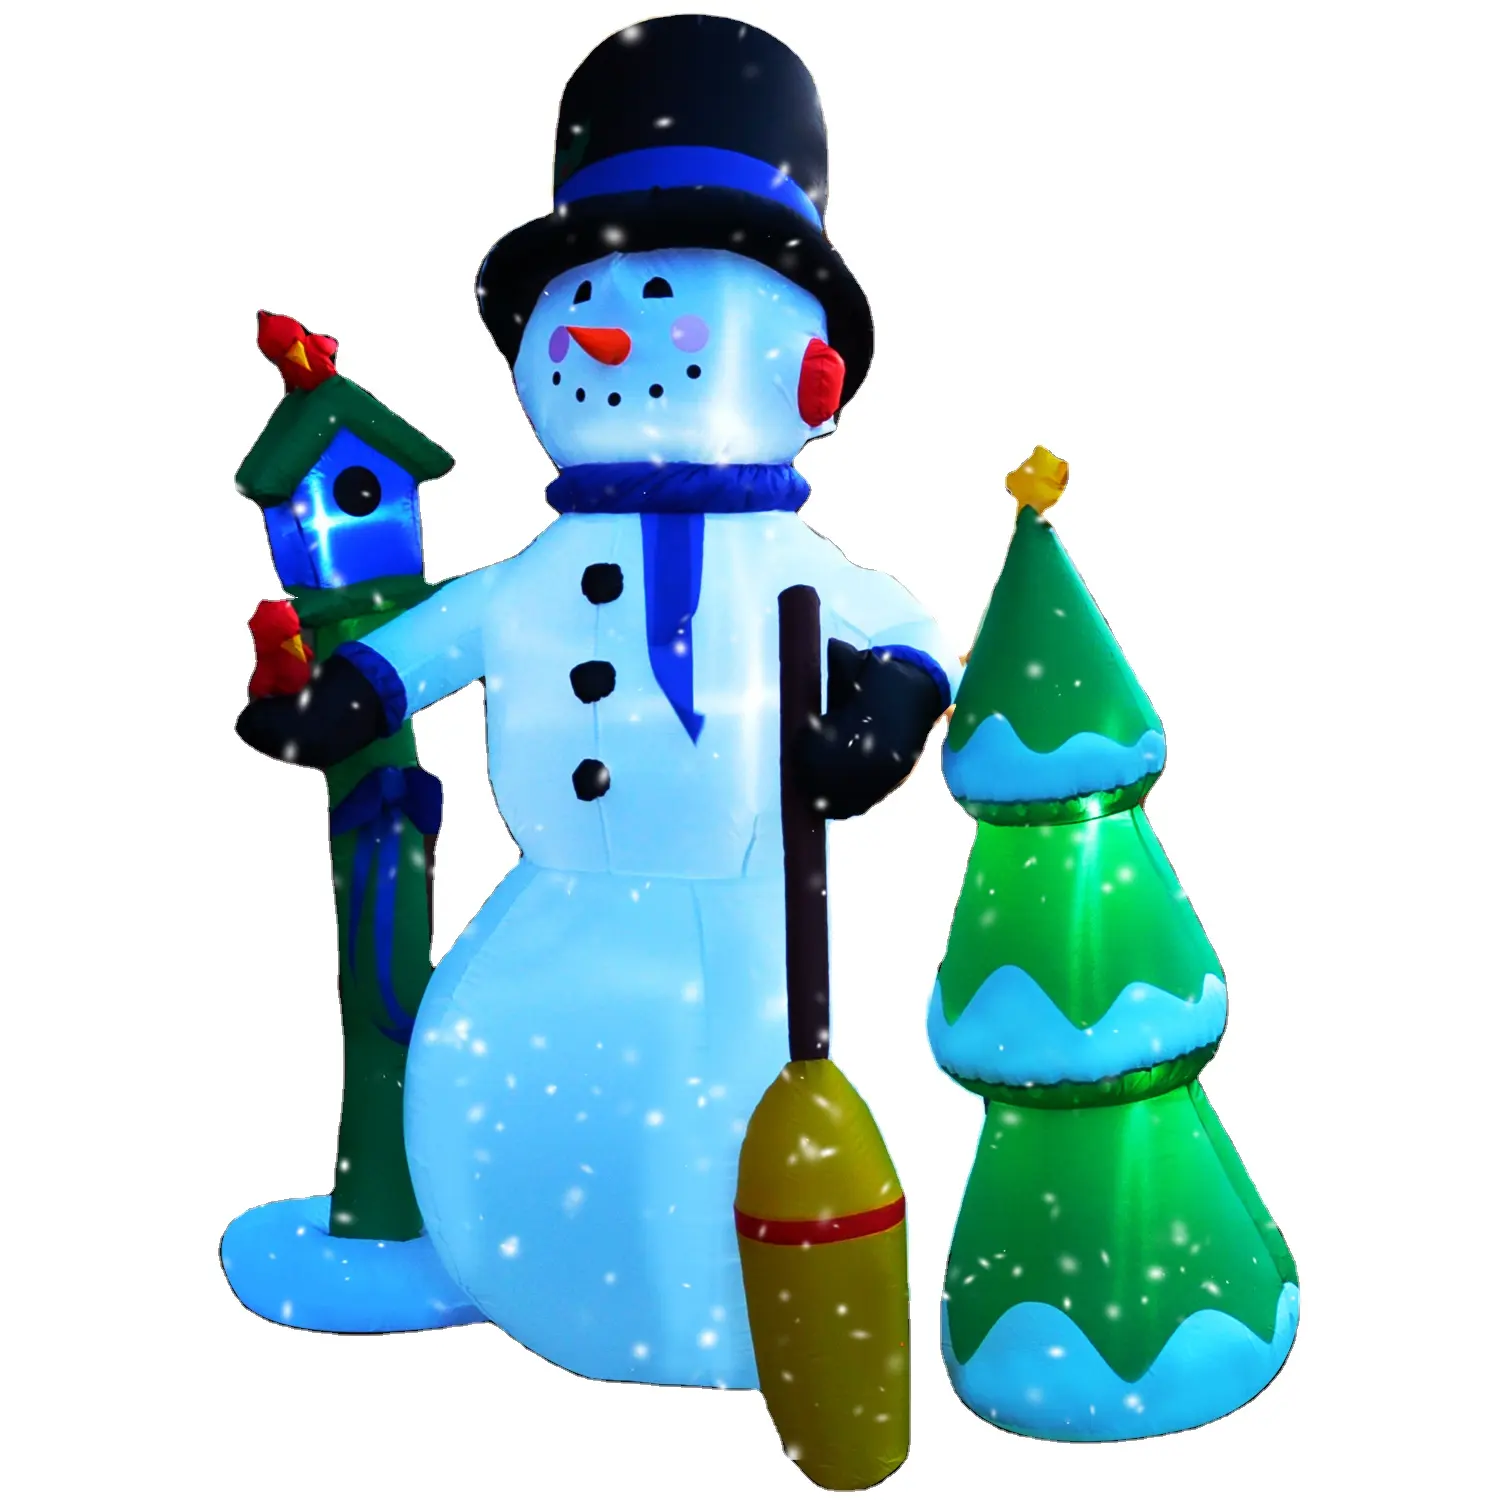 높은 눈사람 풍선 눈사람 크리스마스 장식 lamppost와 besom와 풍선 눈사람